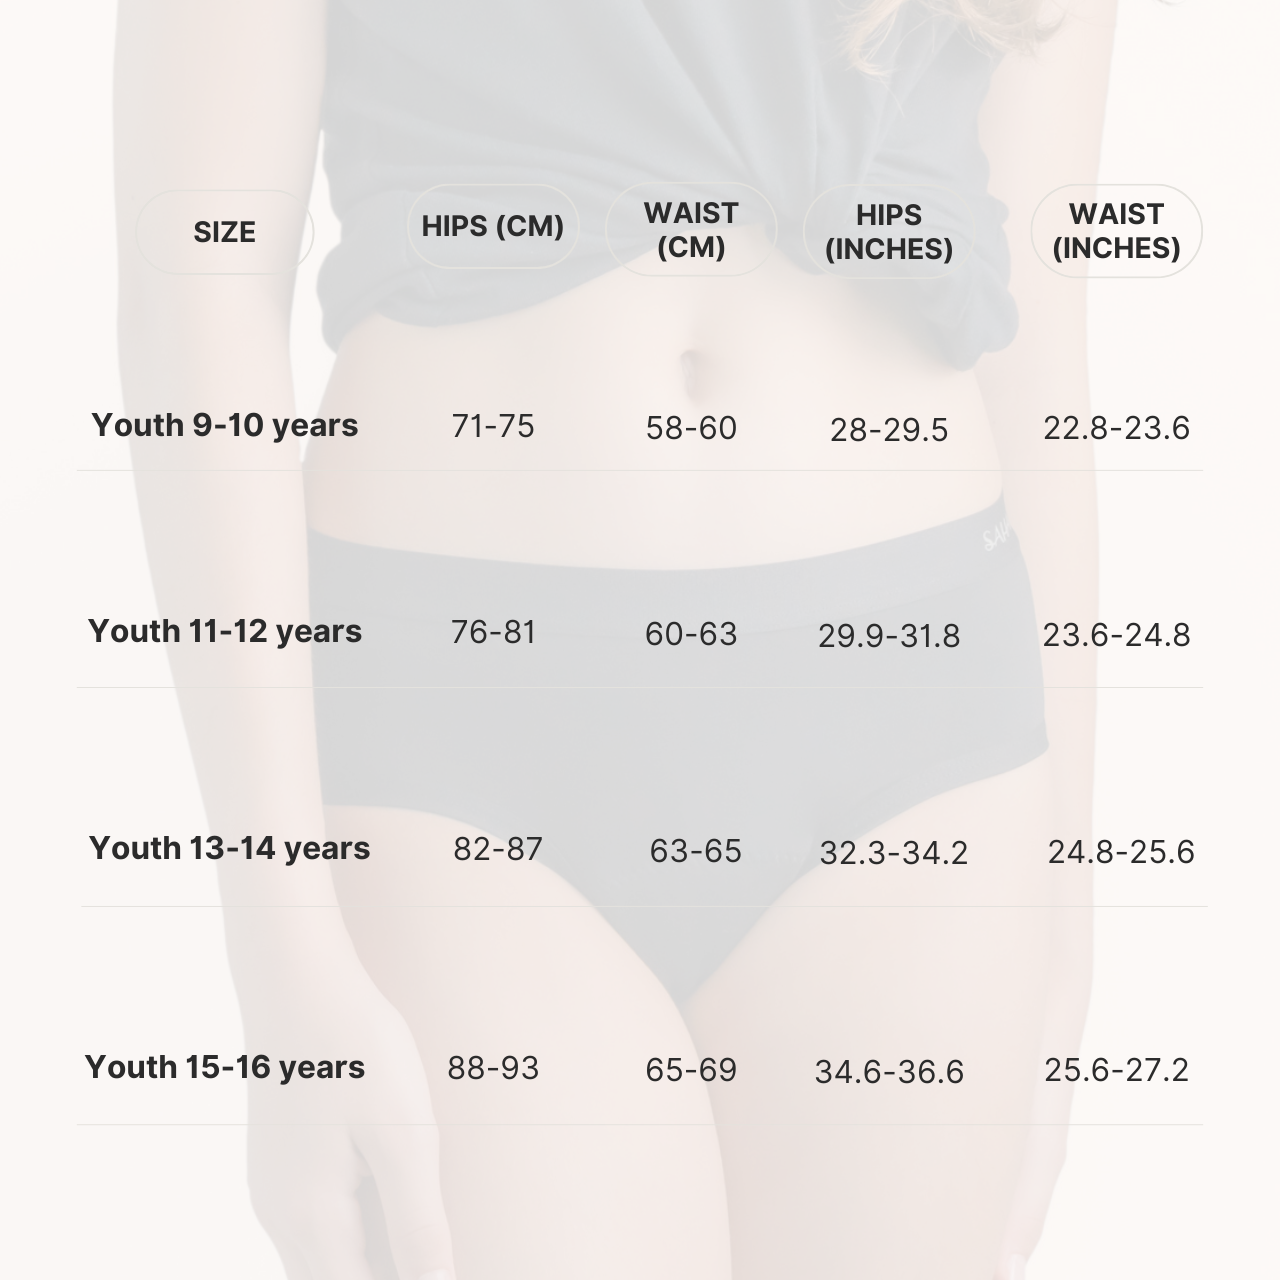 ملابس داخلية مقاومة للدورة الشهرية من صحارى للمراهقات، قدرة امتصاص ثقيلة - للأعمار من 15 إلى 16 عامًا